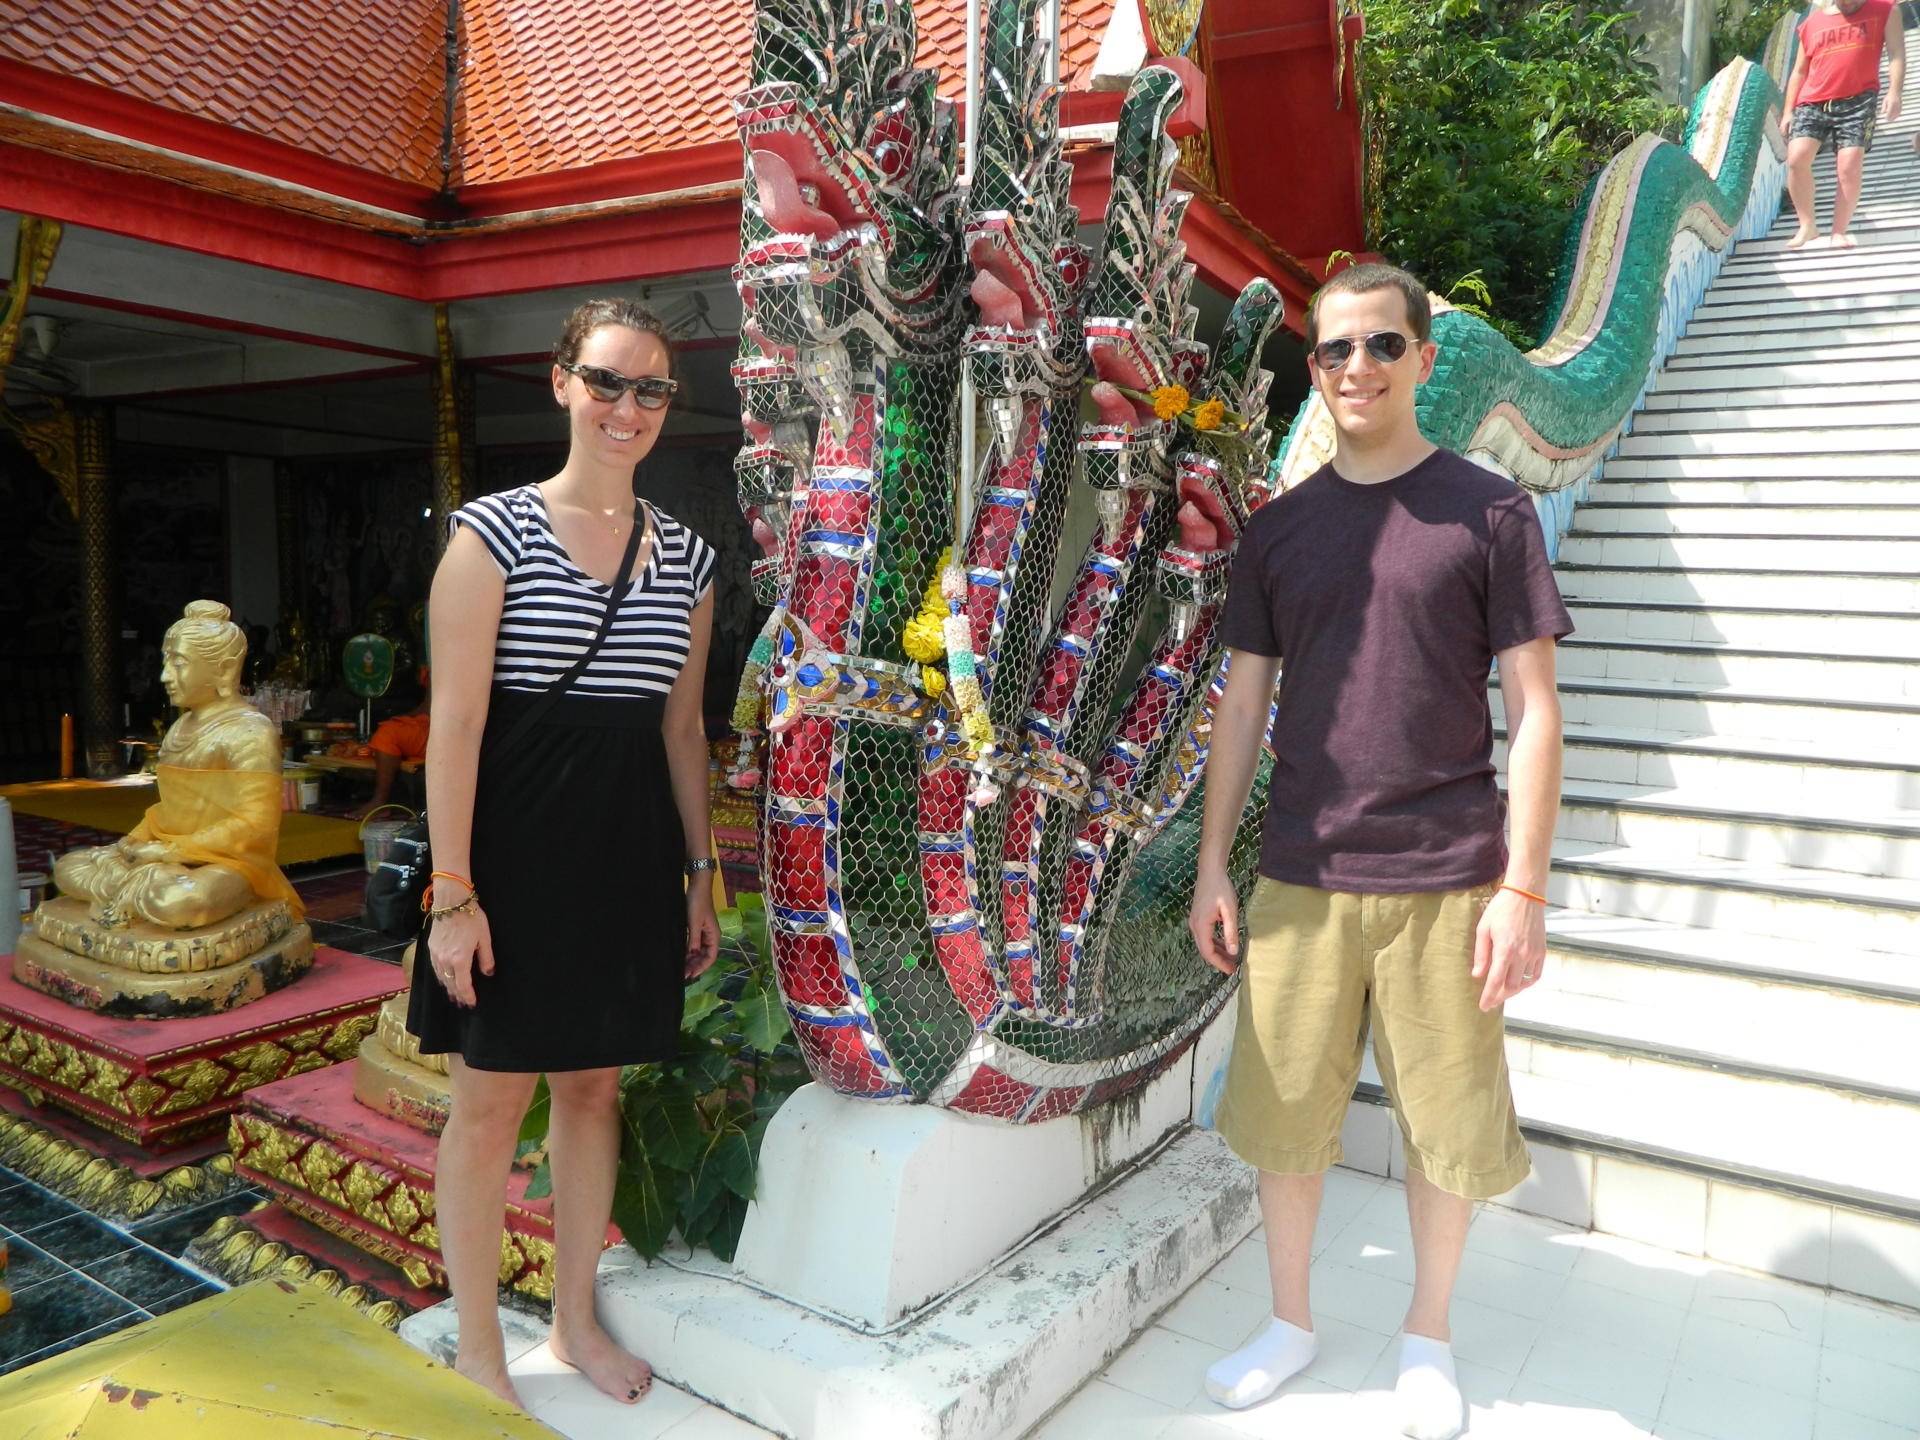 TRAVEL: Thailand, Part 3 - Koh Samui